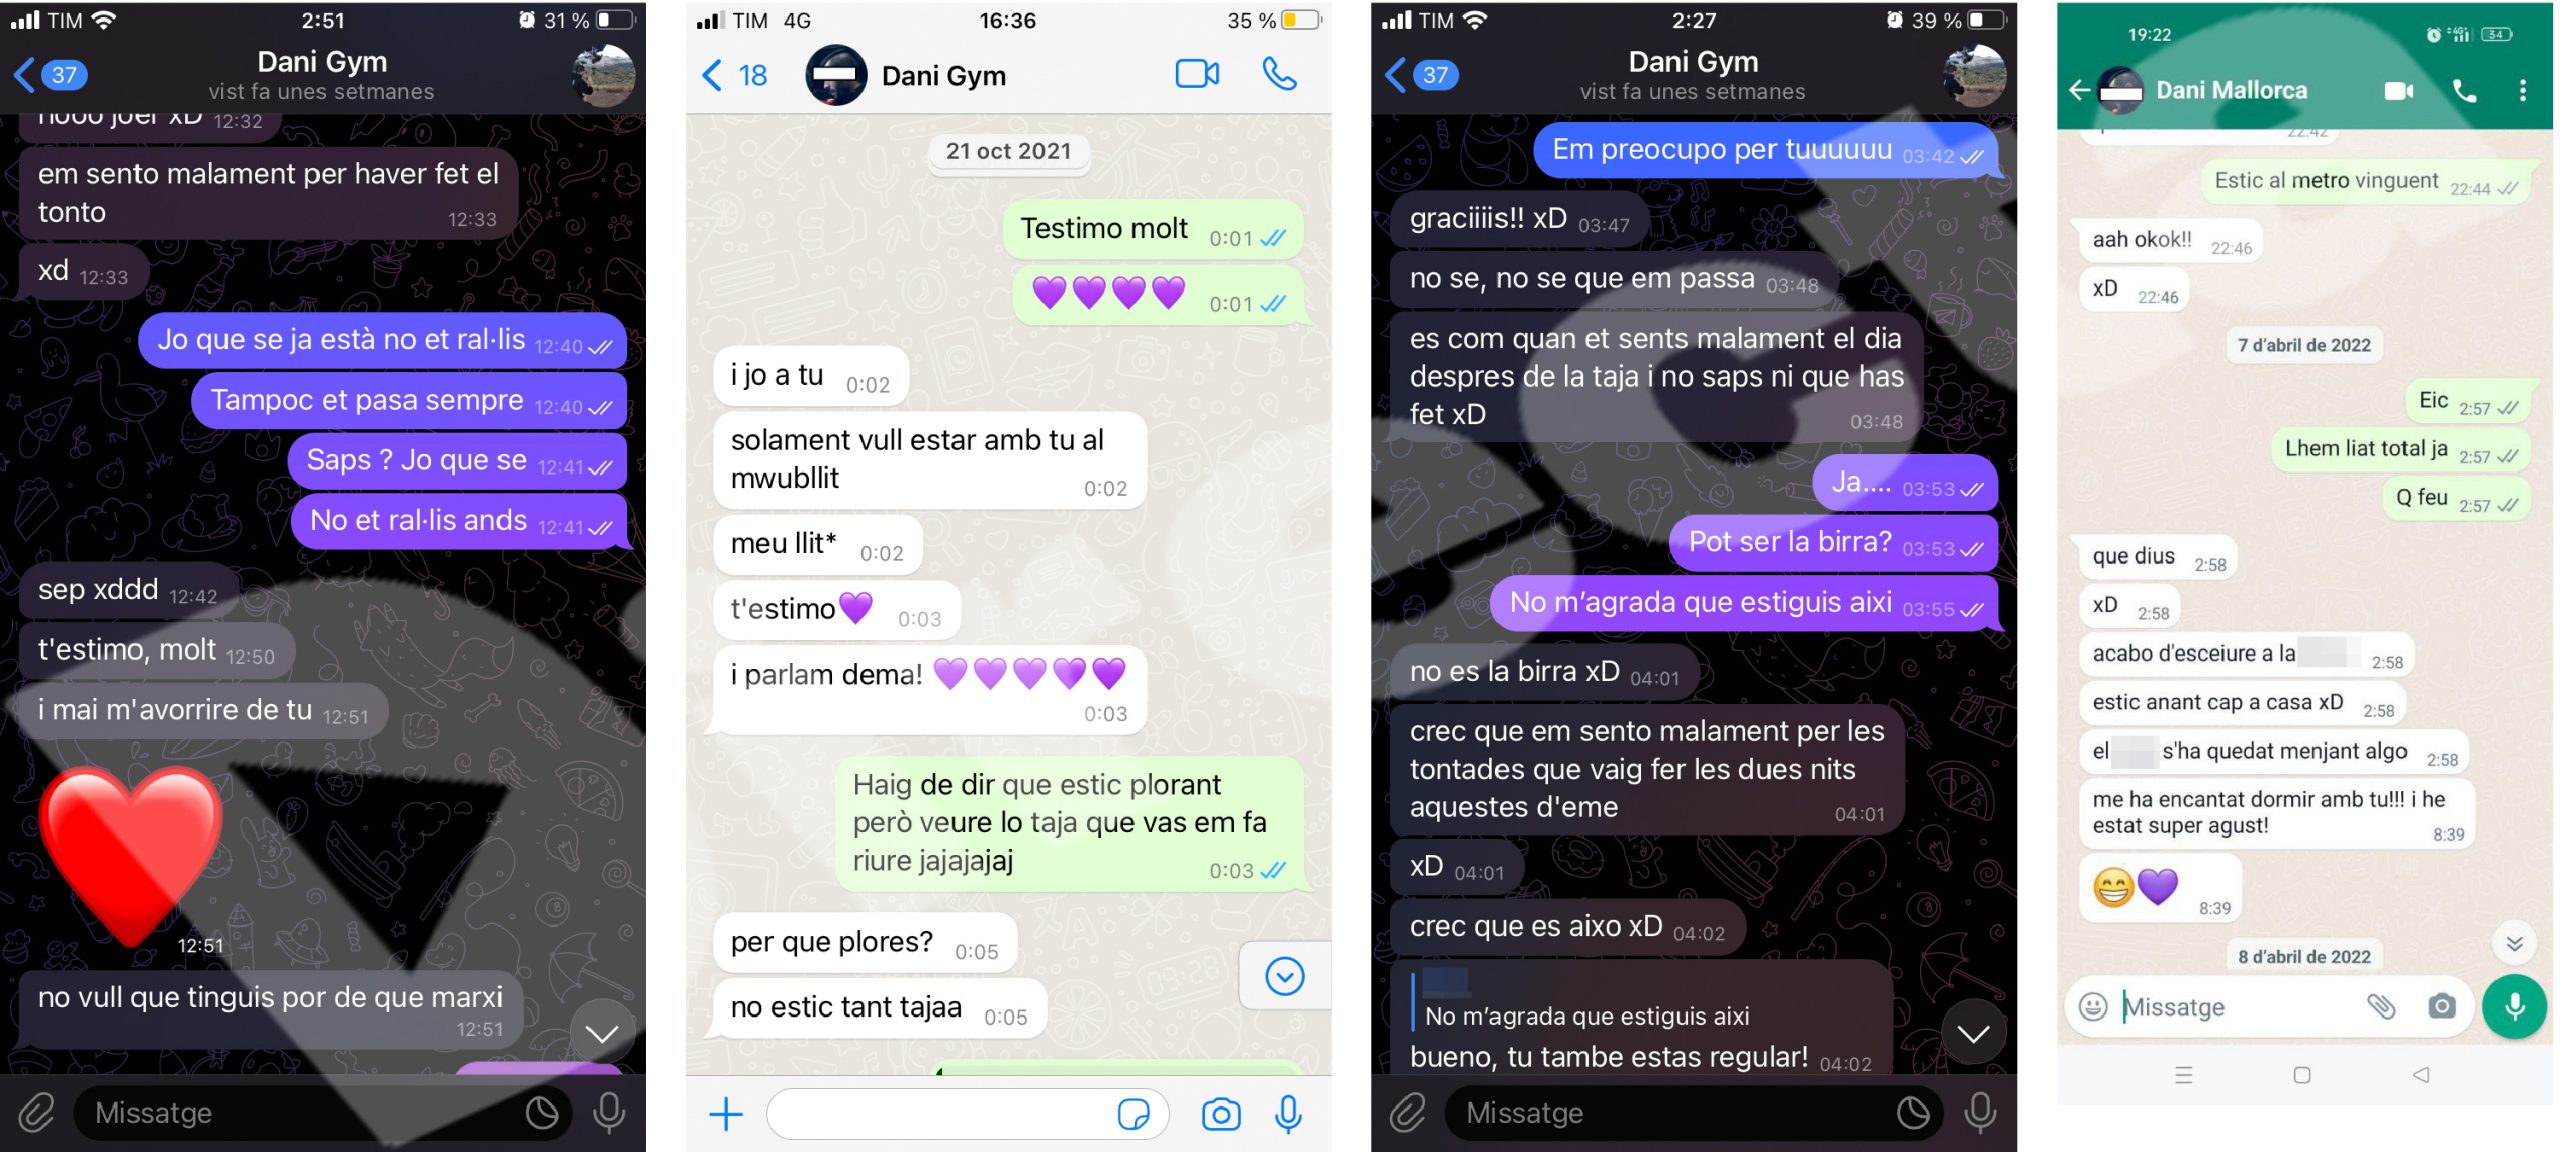 Captures de pantalla de missatges que Daniel Hernàndez Pons ha enviat a diferents dones, on es constaten les relacions sexeafectives i on ell mateix reconeix el consum d’estupefaents. Els textos justificats a l’esquerra corresponen a l’infiltrat